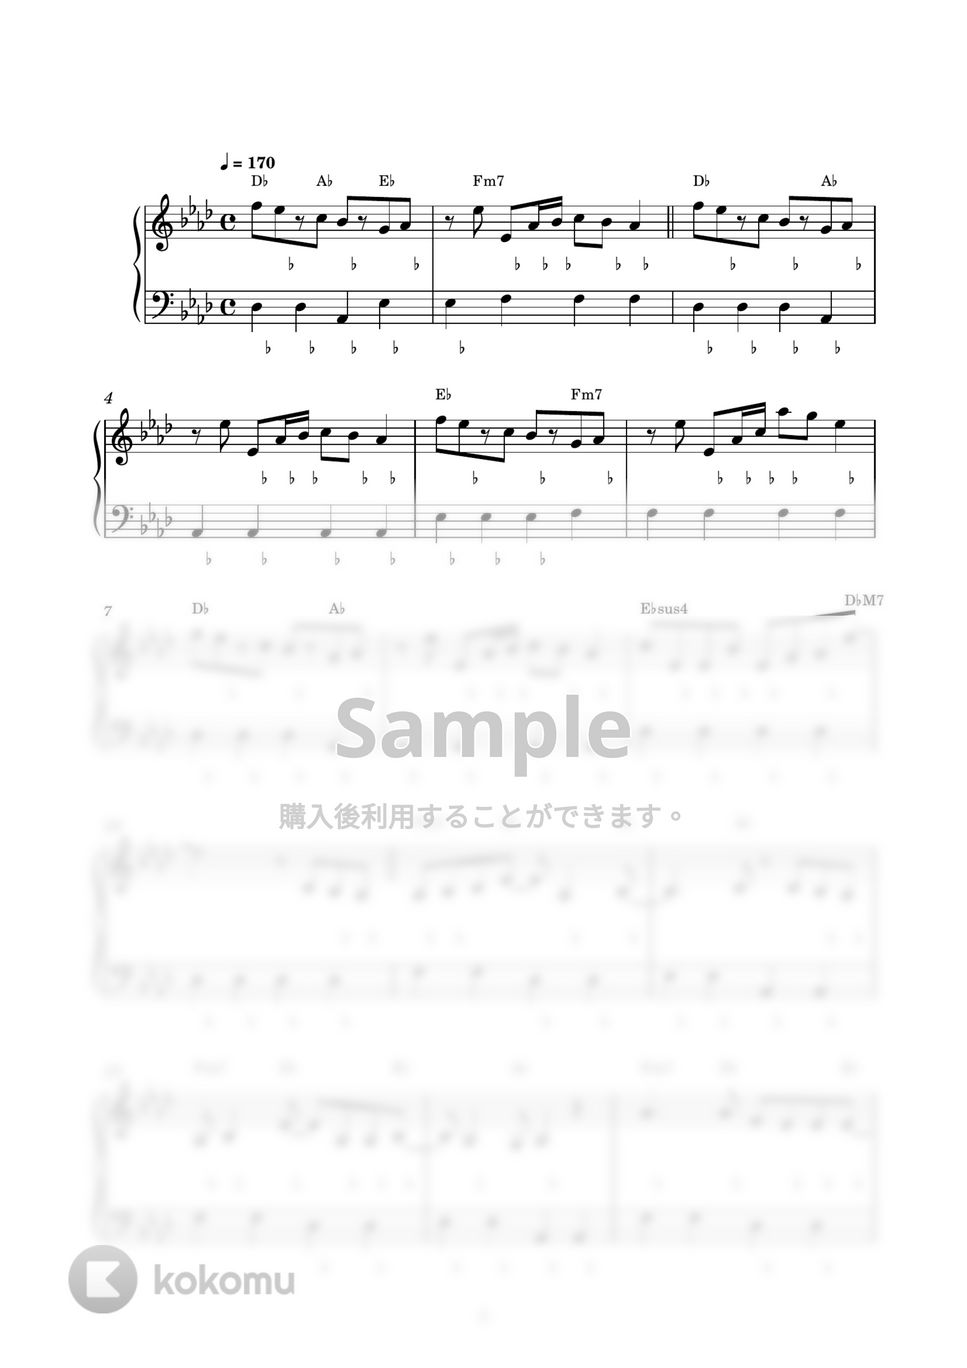 さユり - 花の塔 (ピアノ楽譜 / かんたん両手 / 歌詞付き / ドレミ付き / 初心者向き) by piano.tokyo